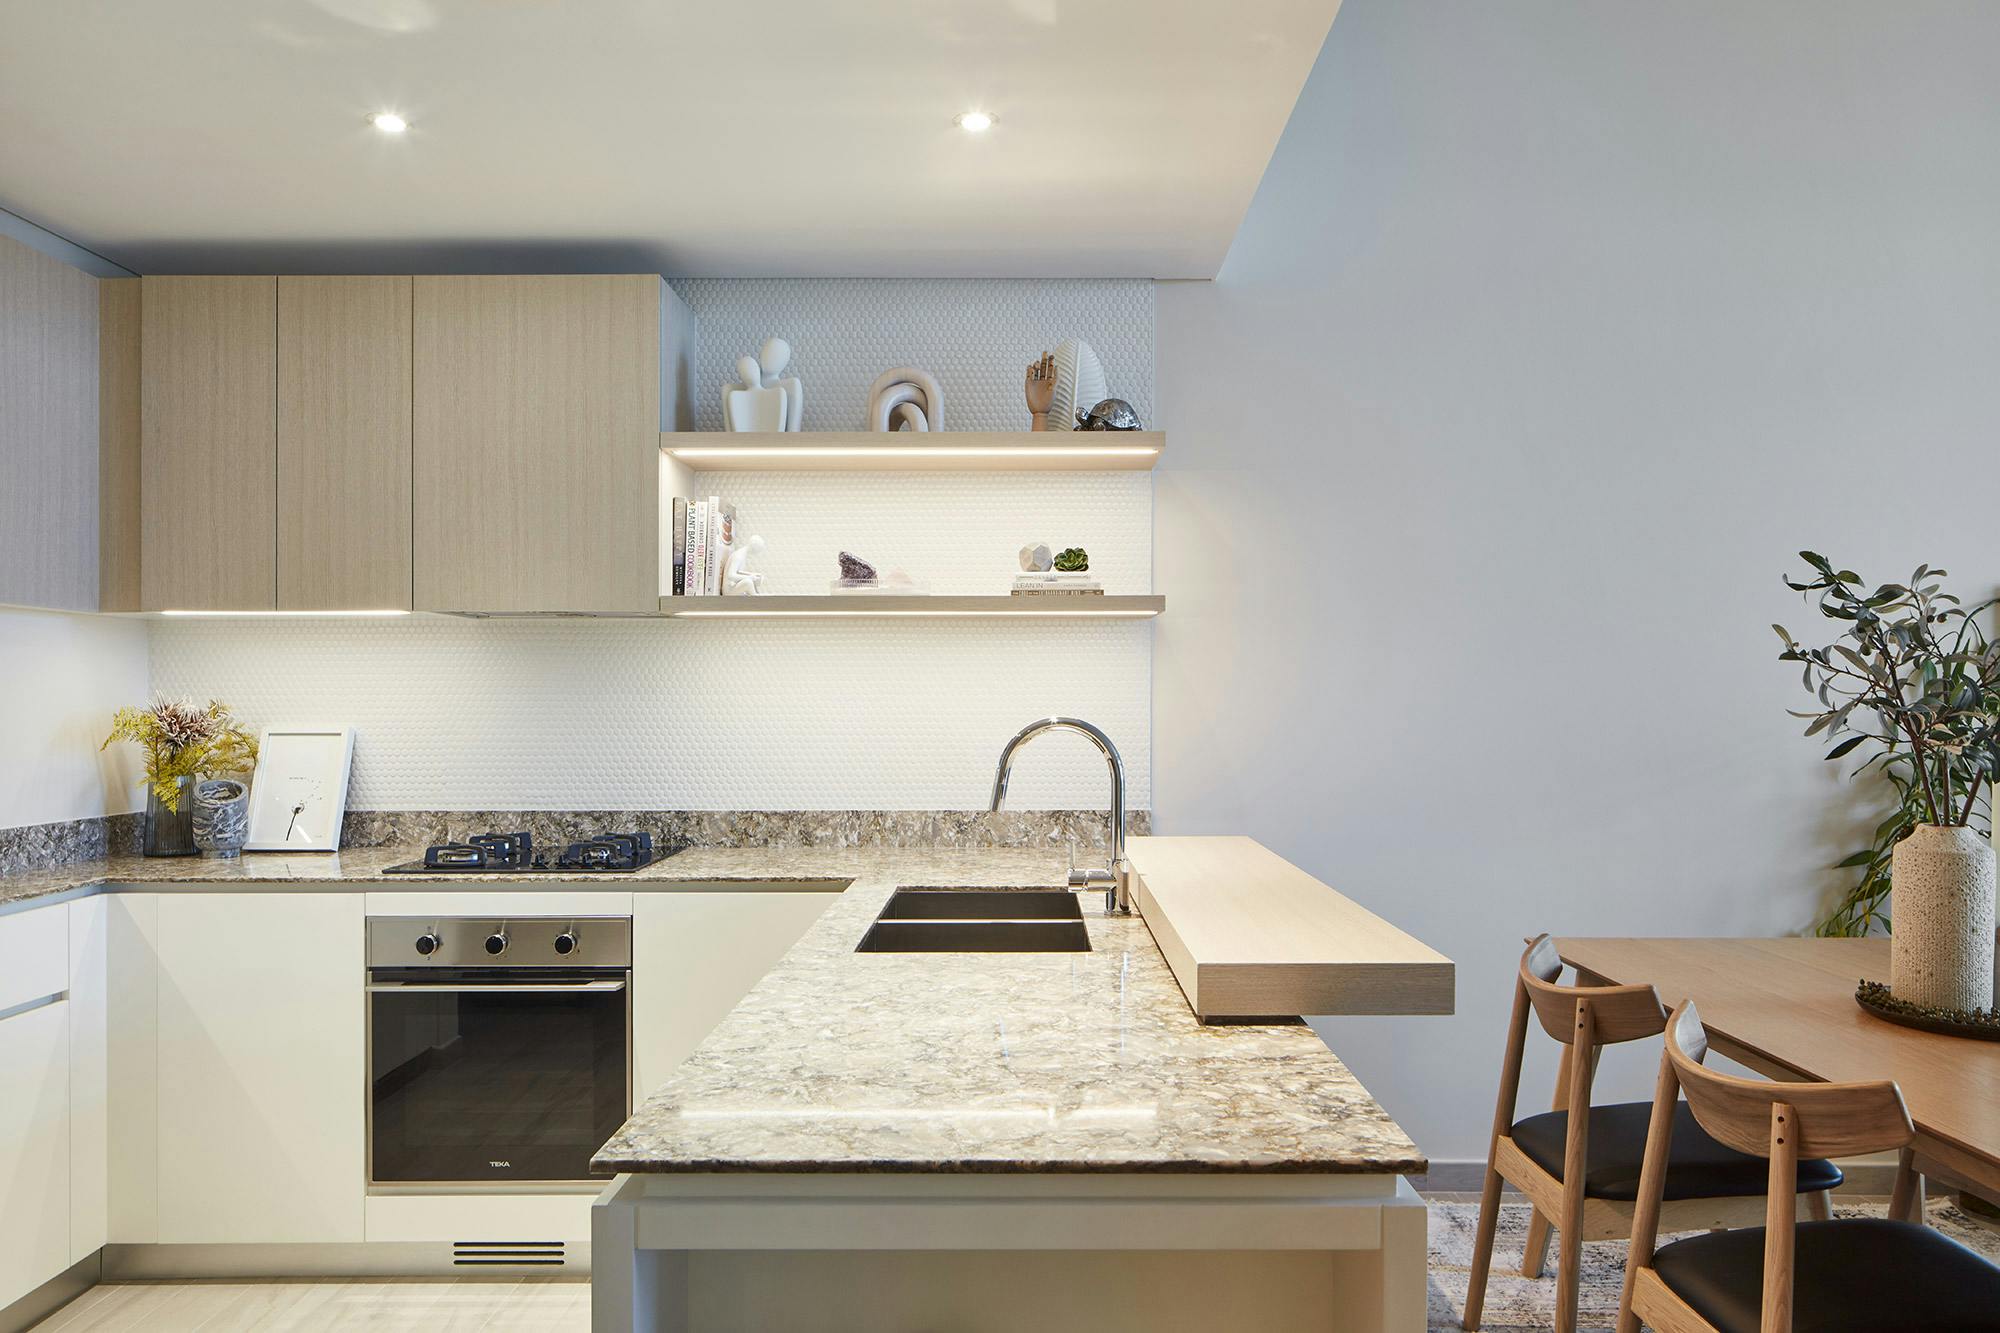 Numero immagine 34 della sezione corrente di DKTN Sirius adds a welcoming touch to the kitchens of a residential development in Dubai di Cosentino Italia